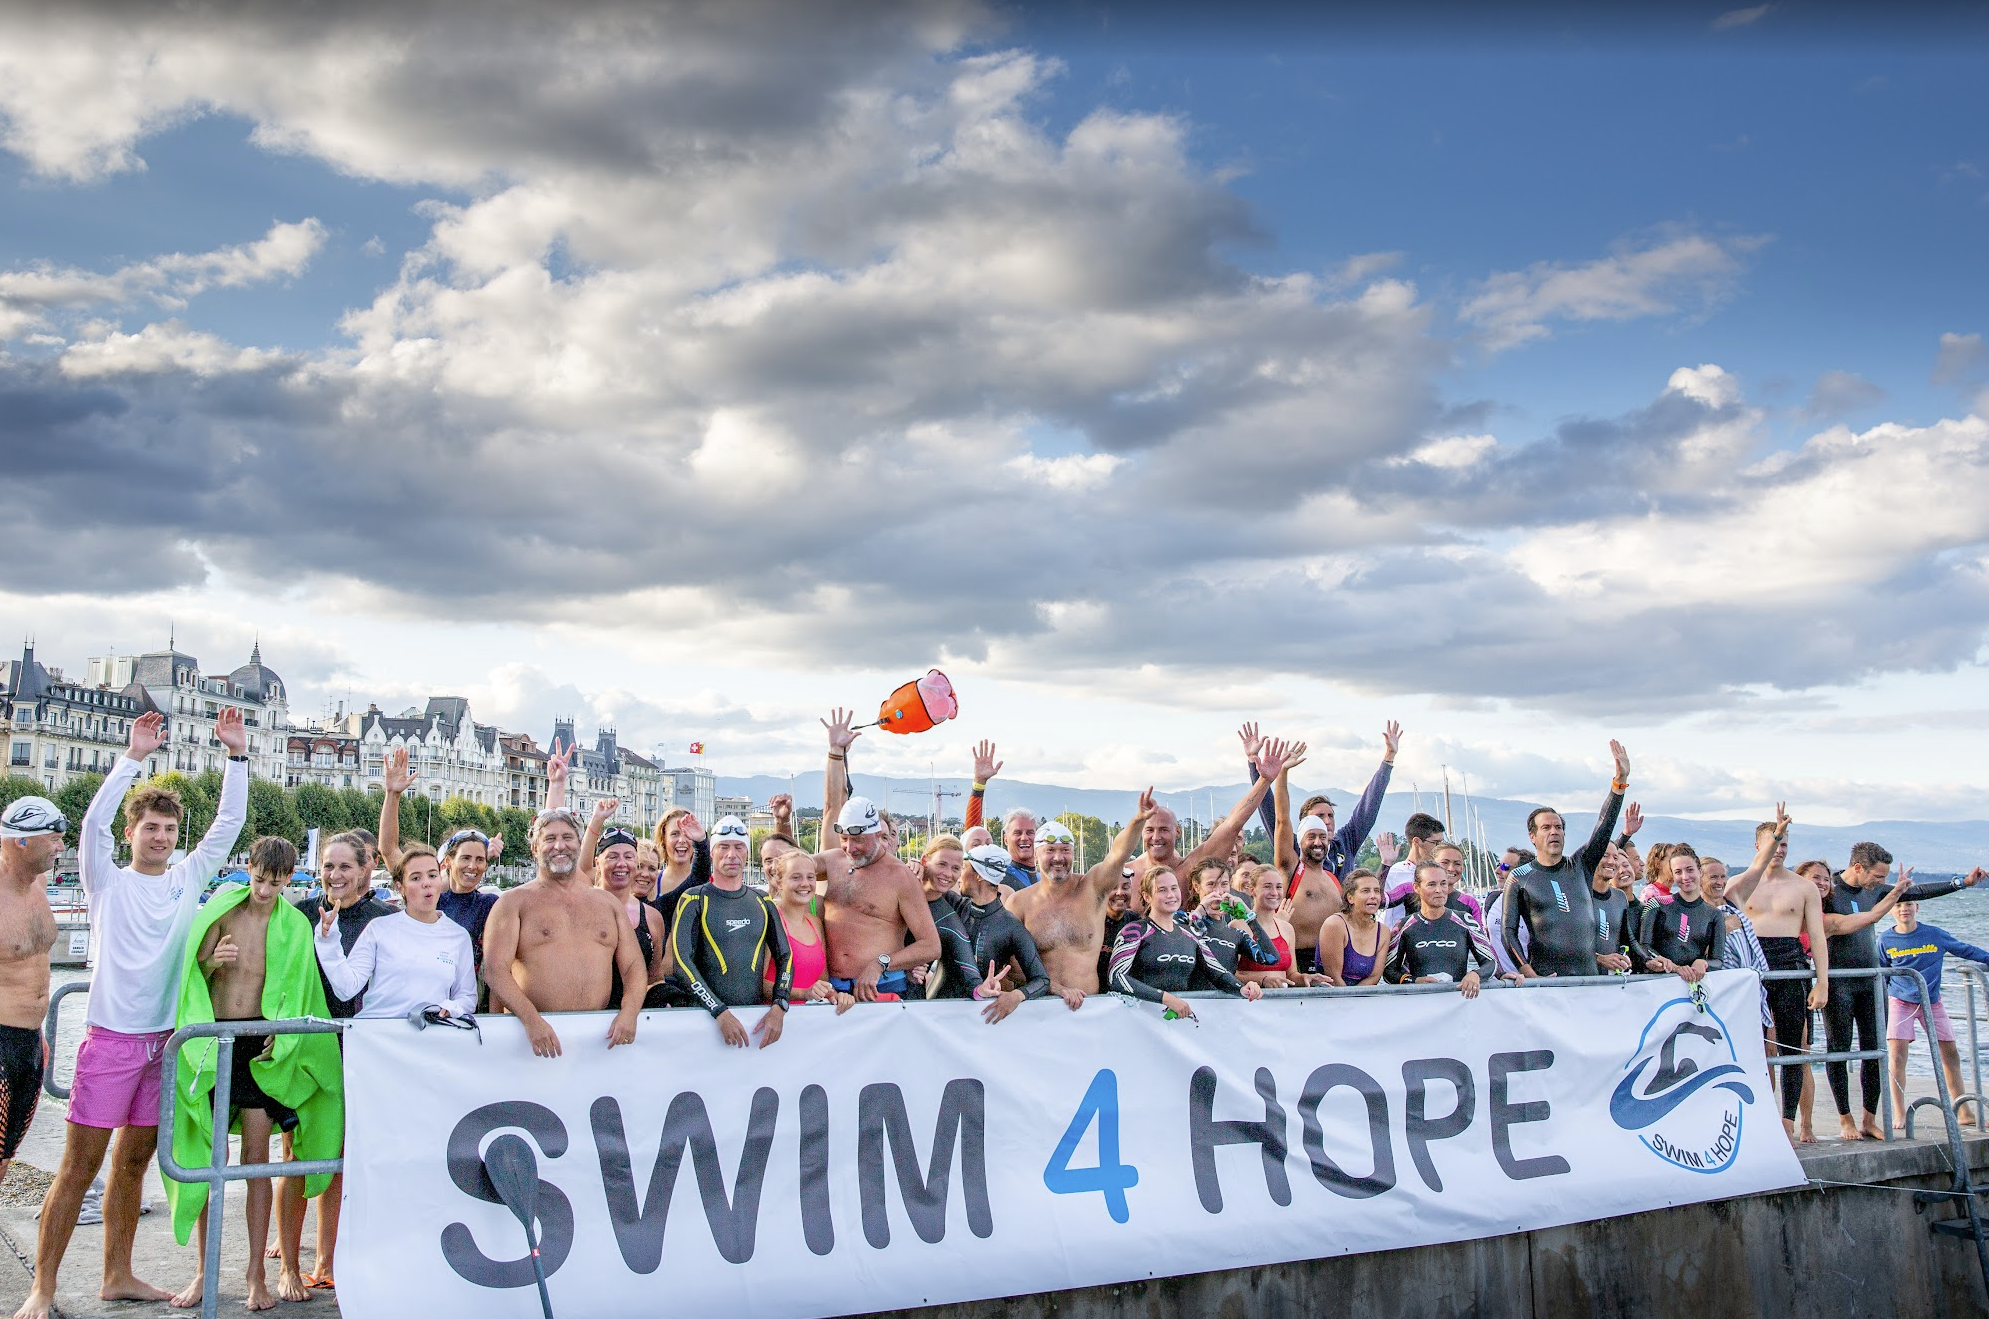 Ensemble, nageons pour l’espoir